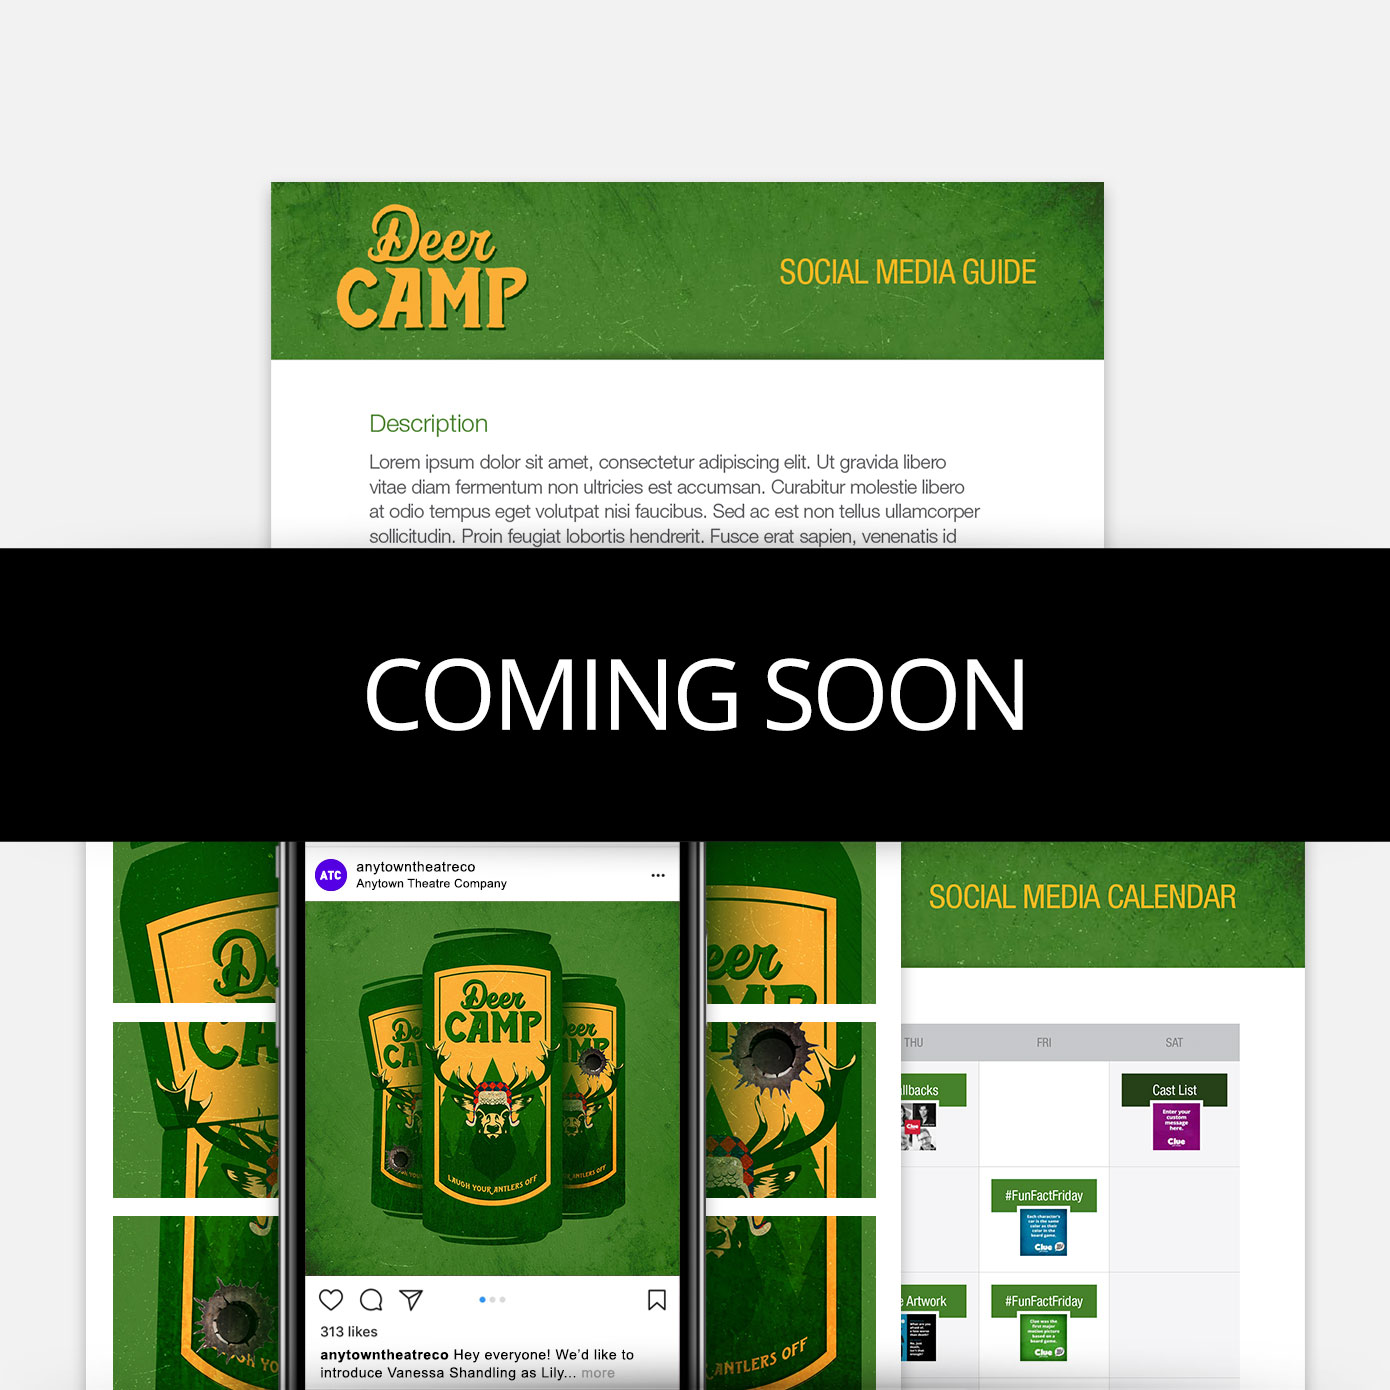 Deer Camp Promotion Kit & Social Media Guide